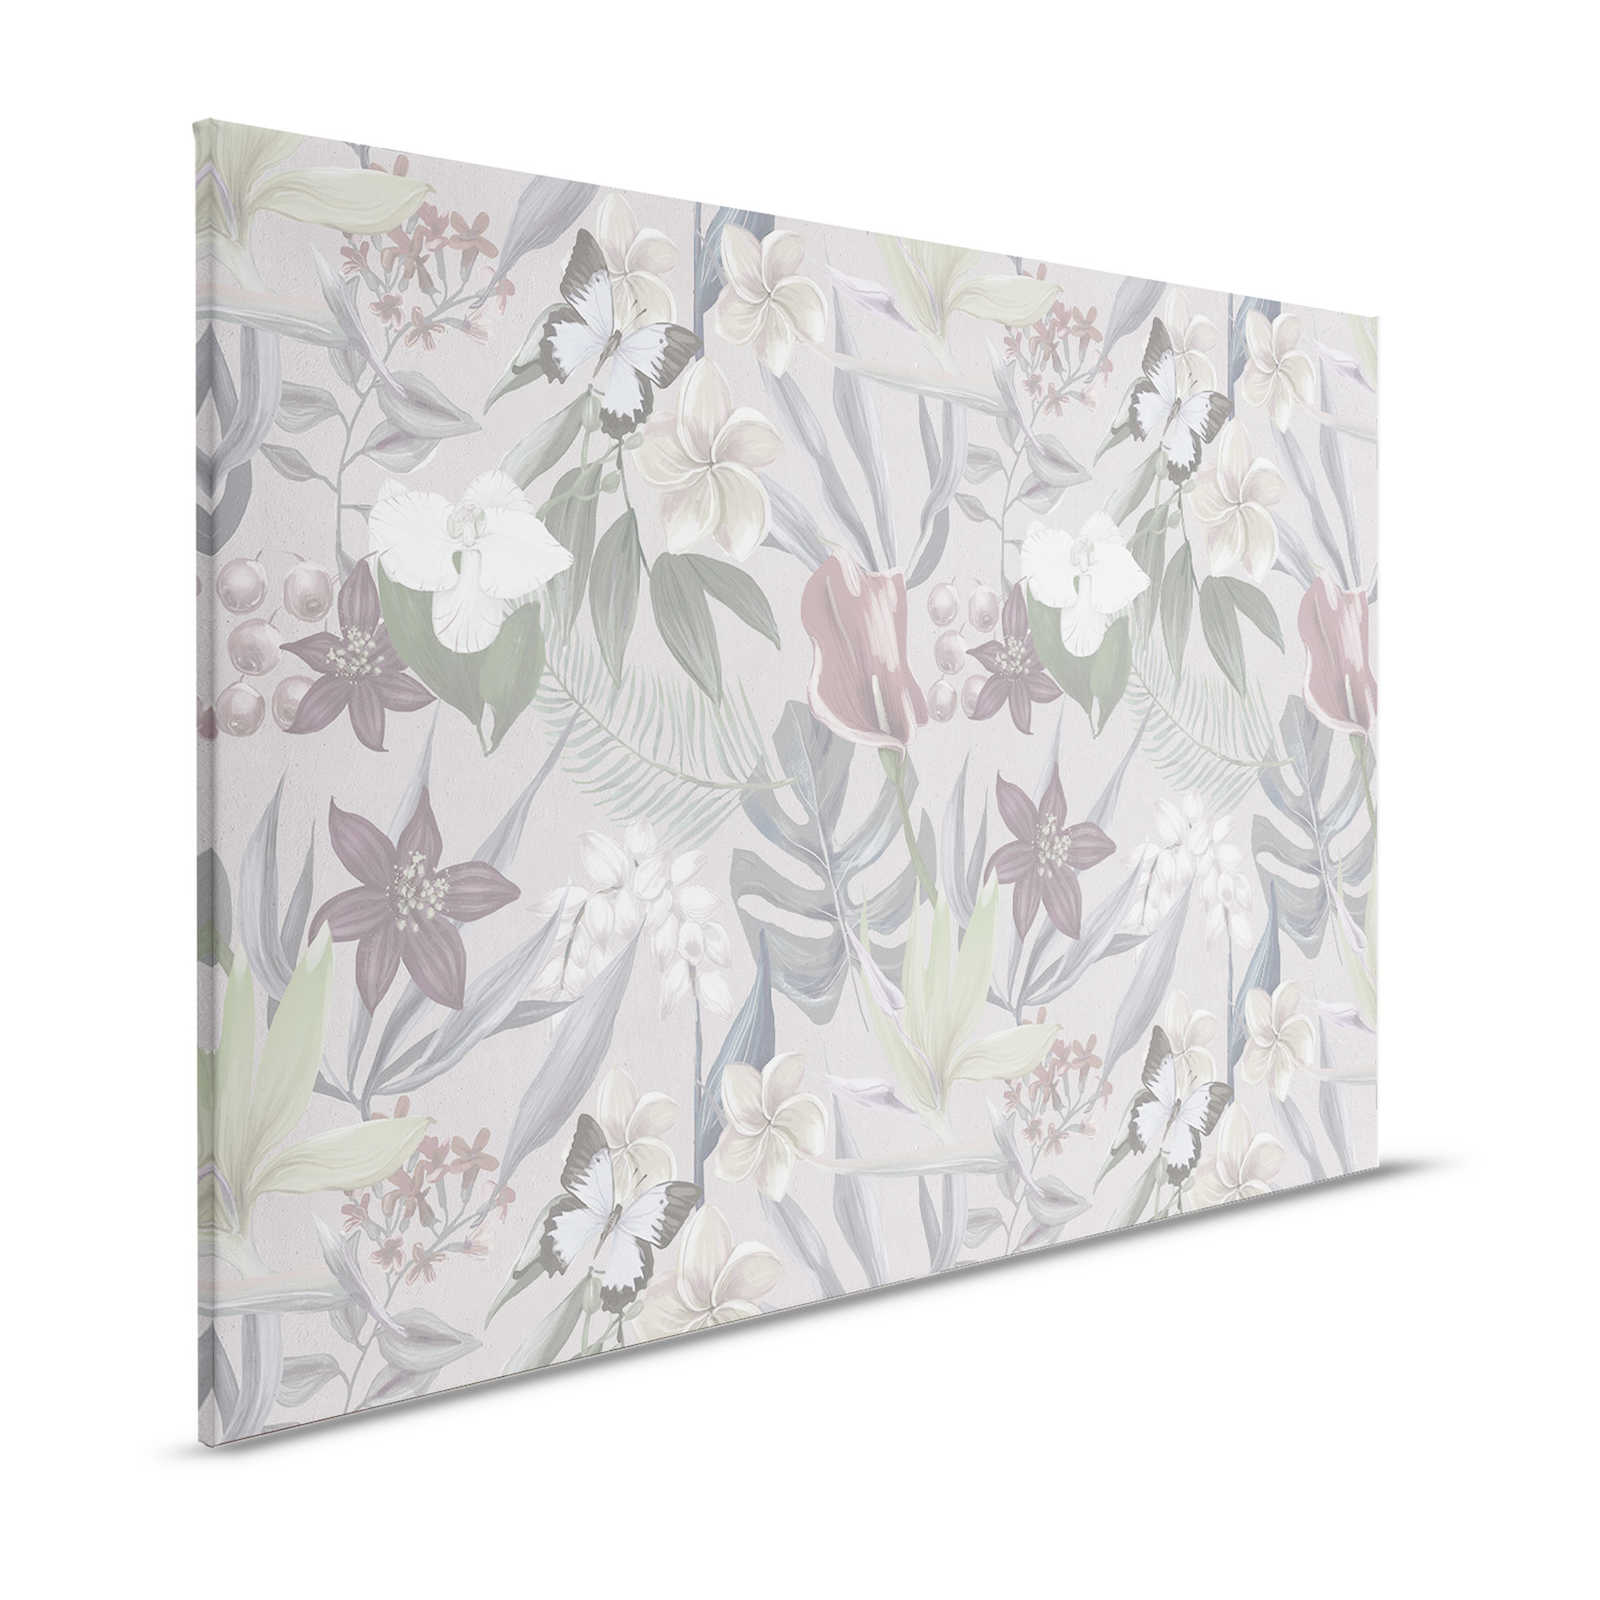 Florales Dschungel Leinwandbild gezeichnet | grau, weiß – 1,20 m x 0,80 m
